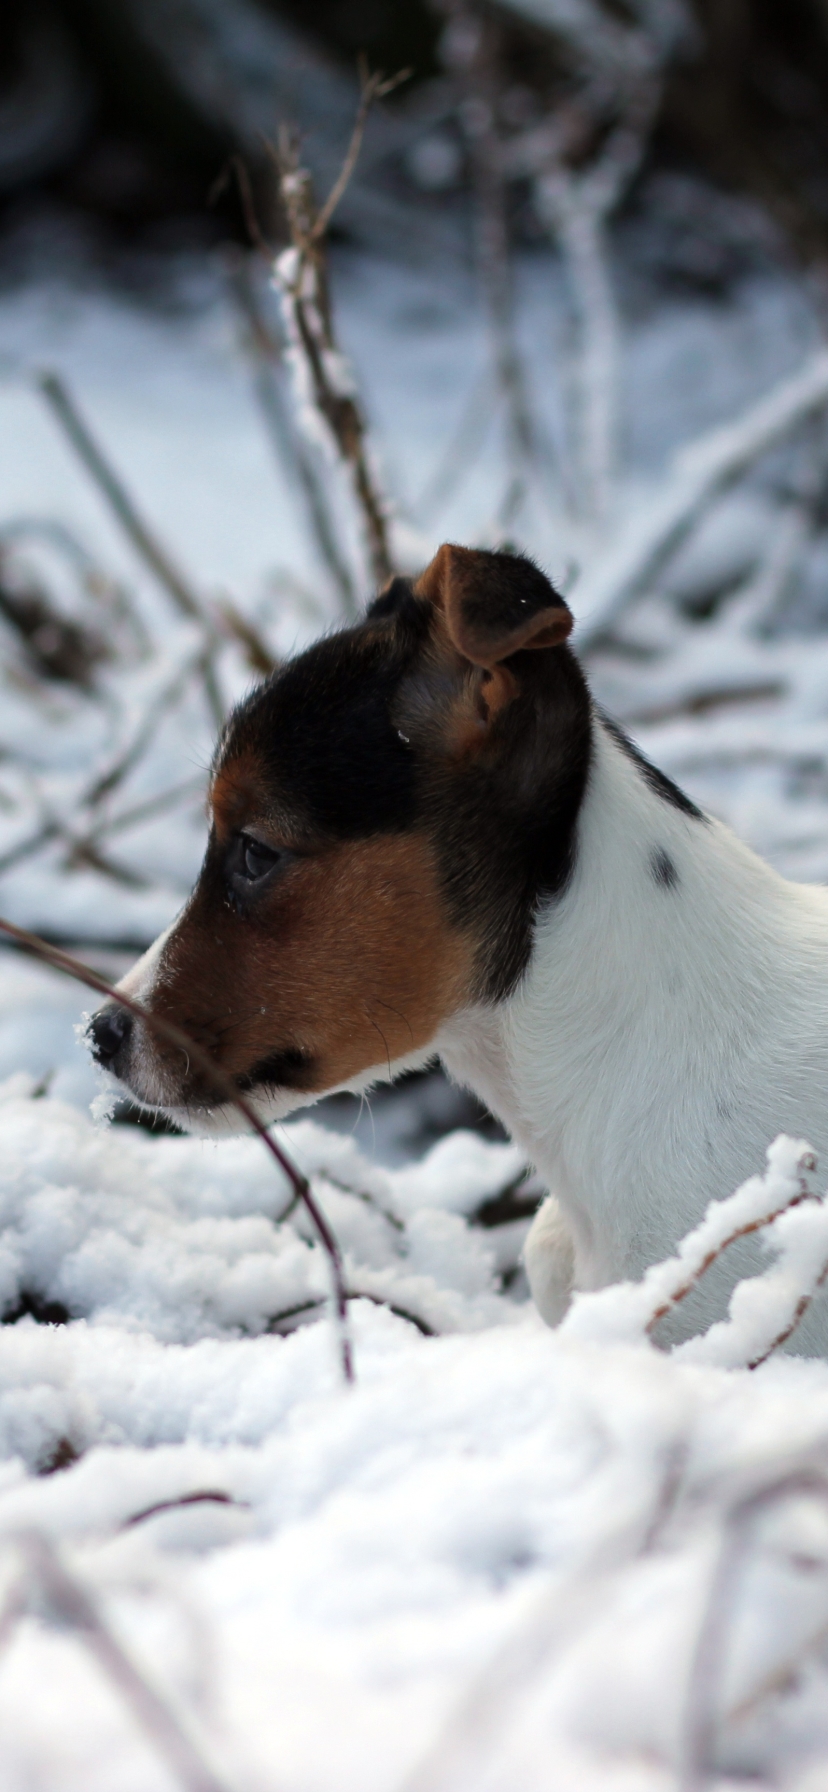 Descarga gratuita de fondo de pantalla para móvil de Animales, Invierno, Perros, Nieve, Cachorro, Beagle, Bebe Animal.